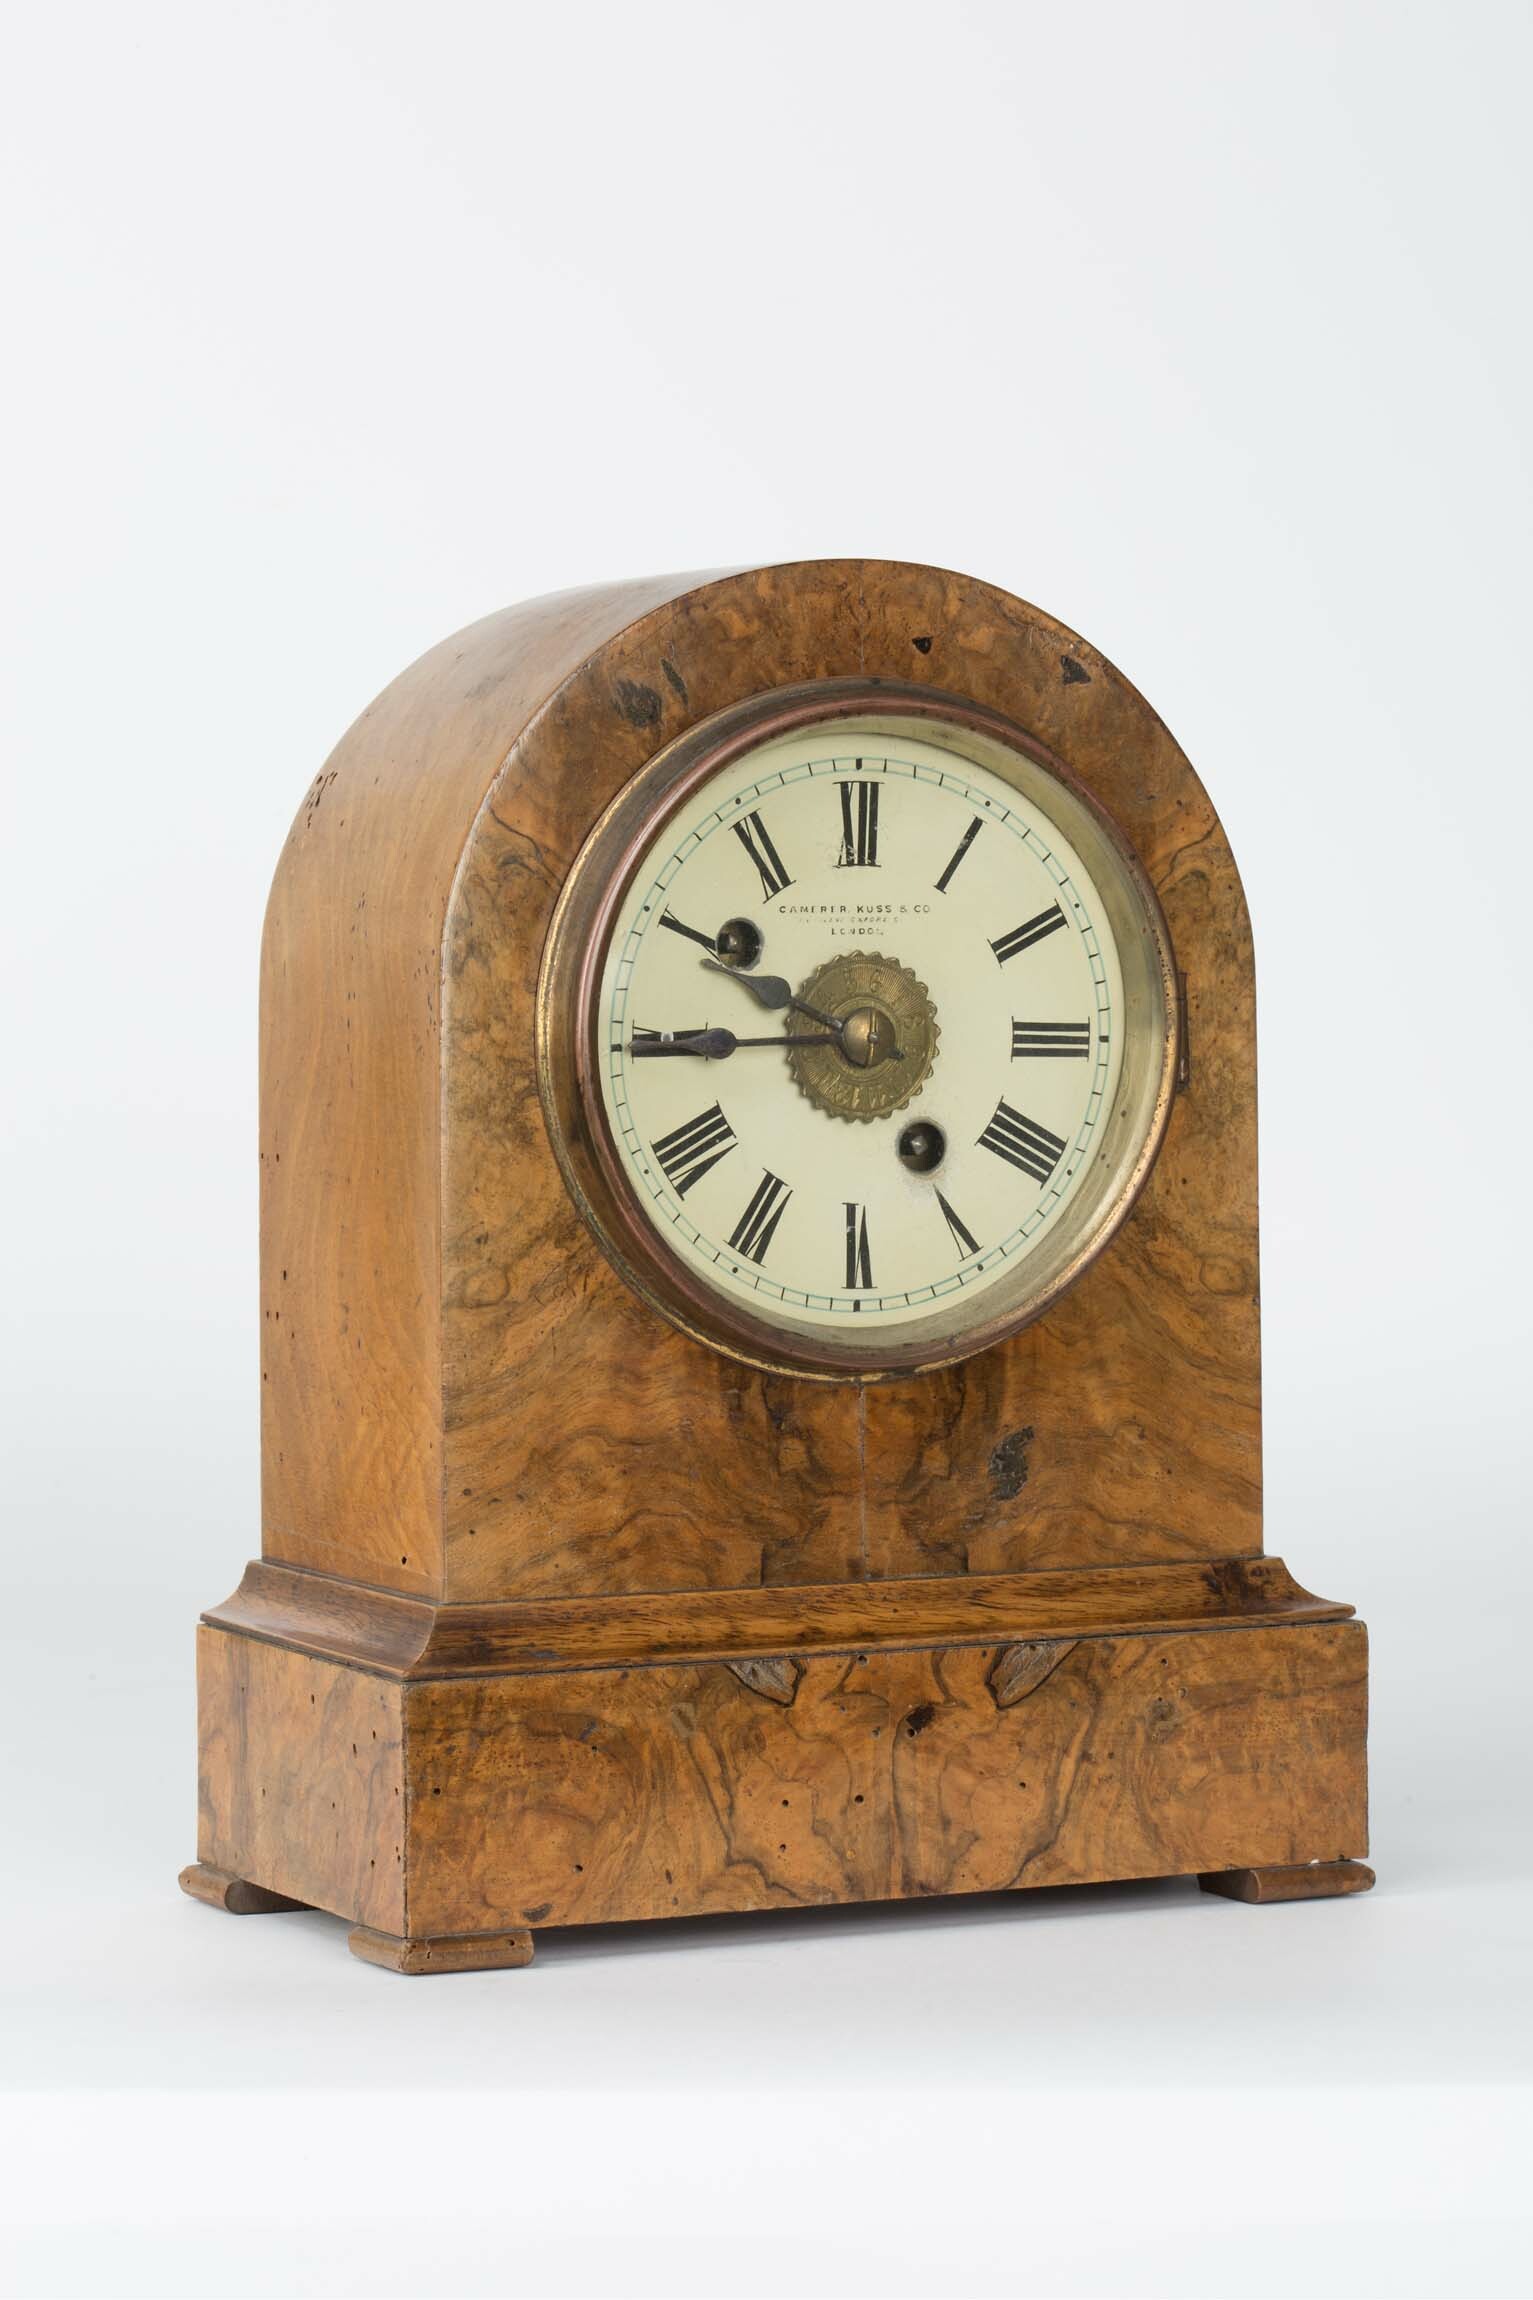 Tischuhr, Camerer, Kuss und Co., London, Werk: Winterhalder und Hofmeier, Schwärzenbach (Neustadt), um 1885 (Deutsches Uhrenmuseum CC BY-SA)